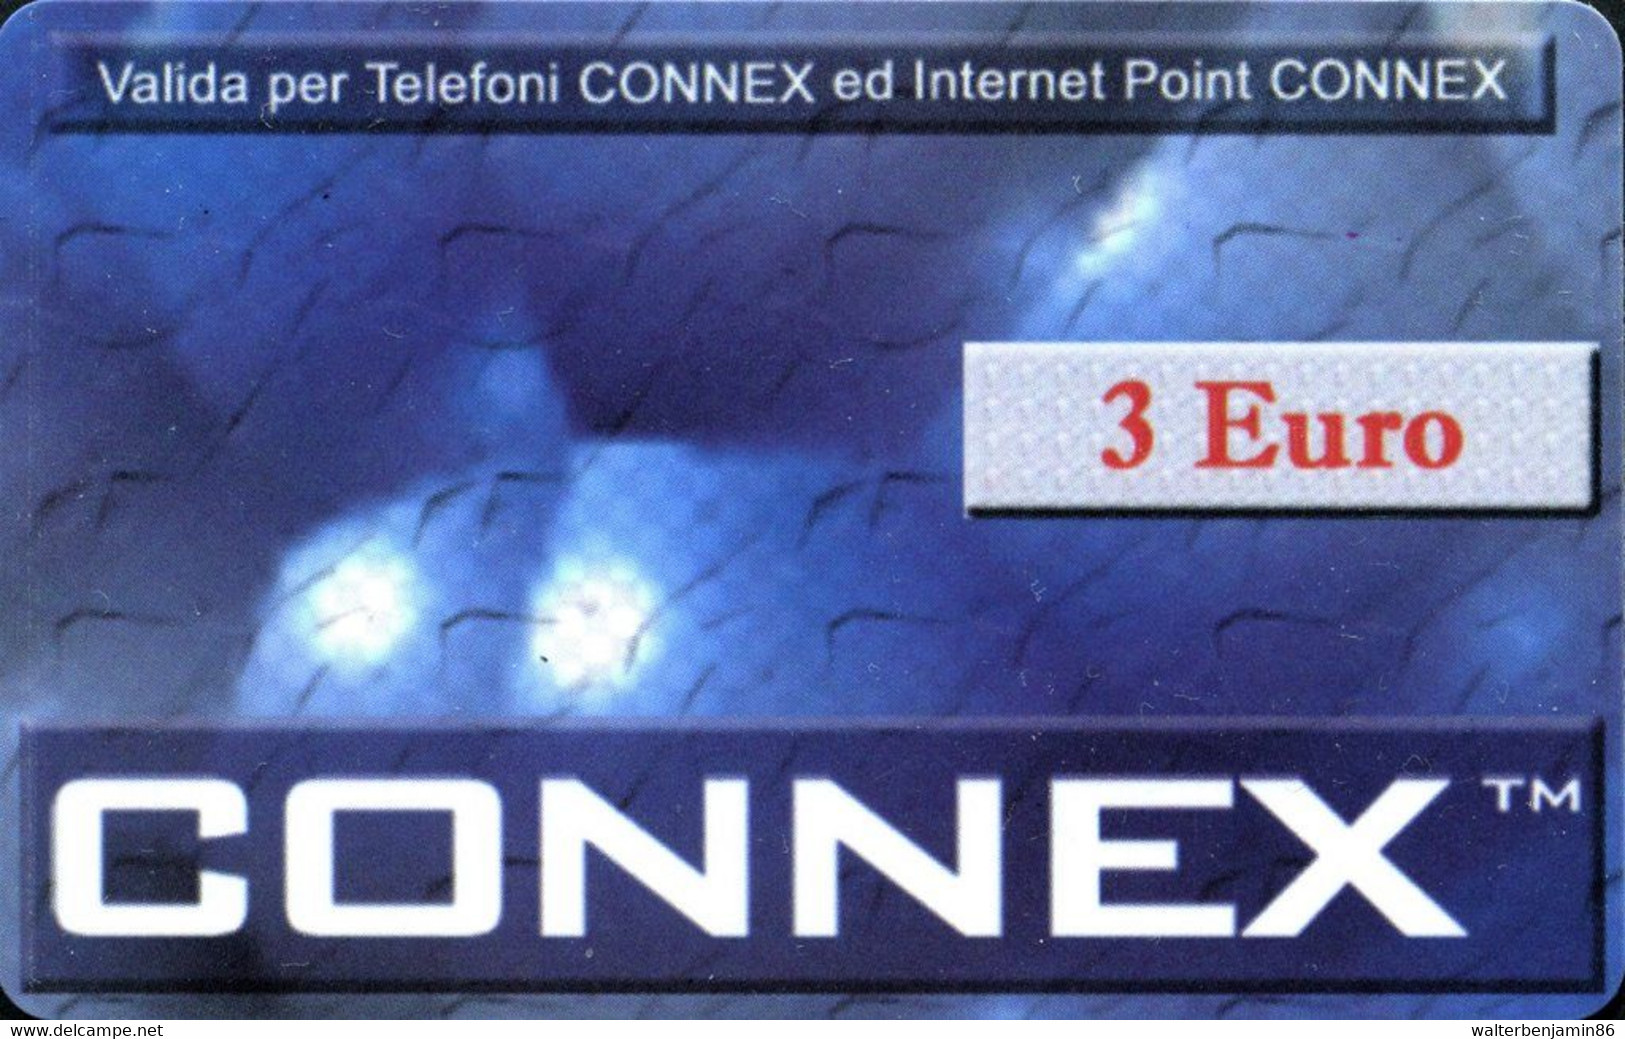 C&C 9060 A SCHEDA TELFONICA USI SPECIALI CONNEX 3 EURO DUMMY SENZA CHIP - Usos Especiales